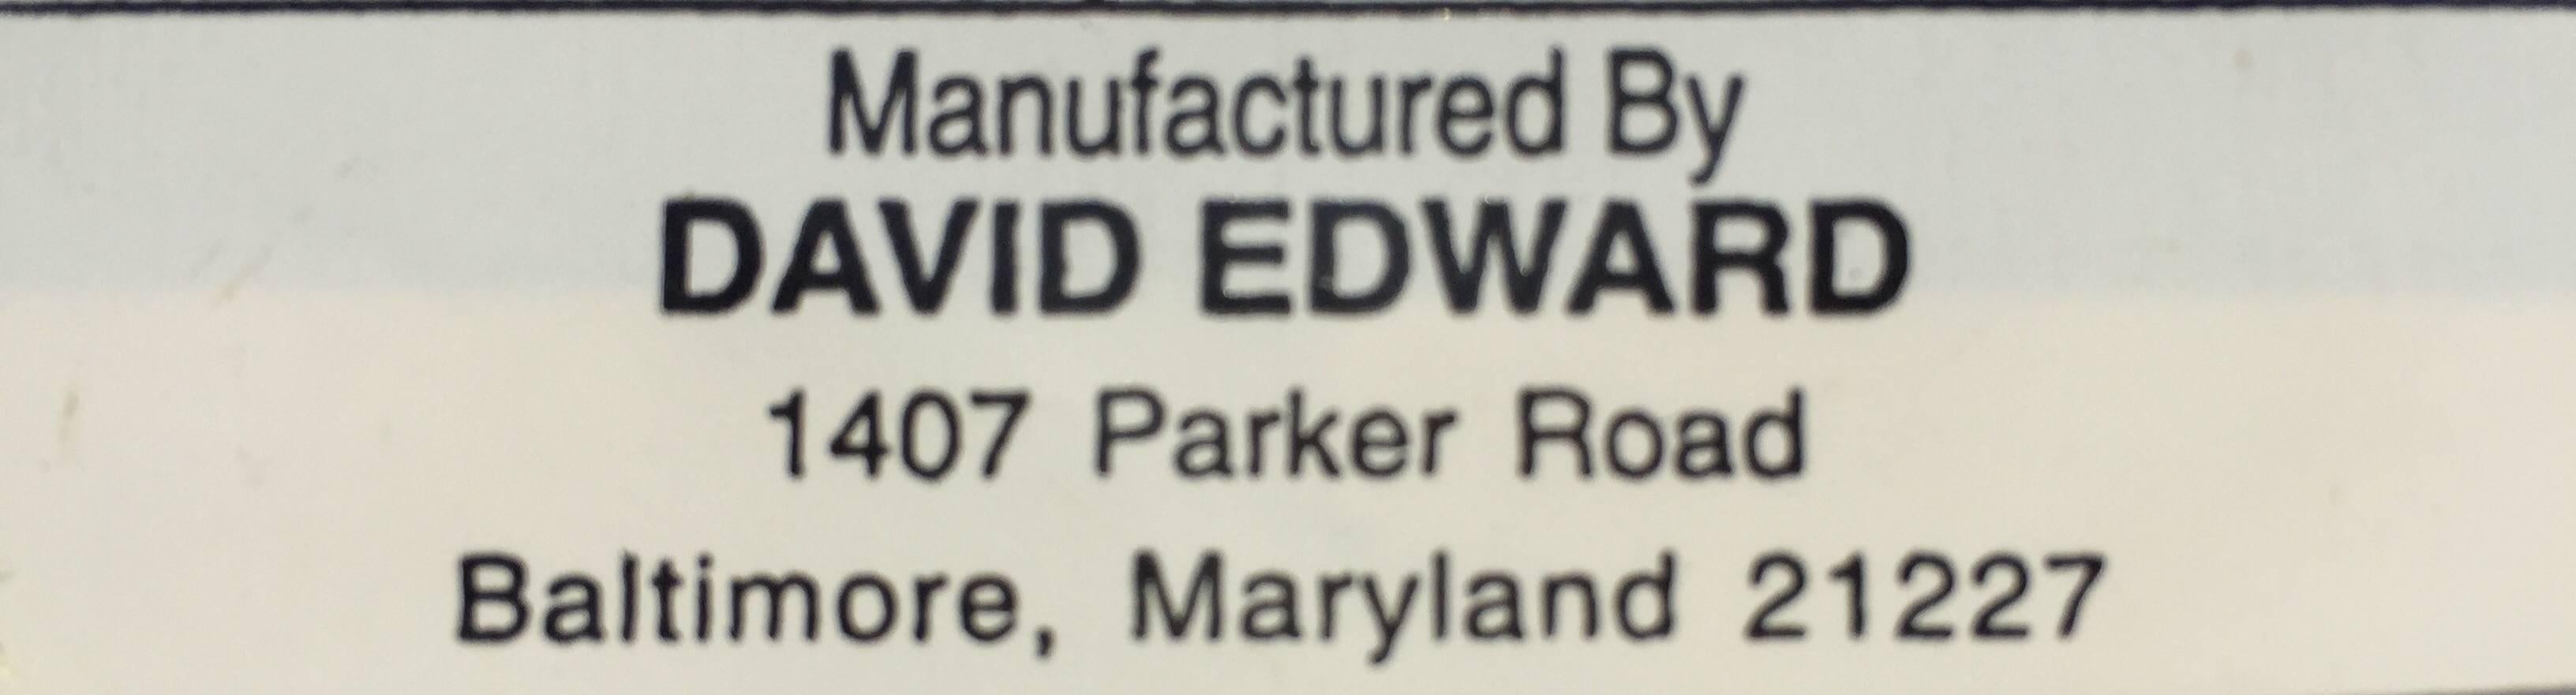 david edward chairs